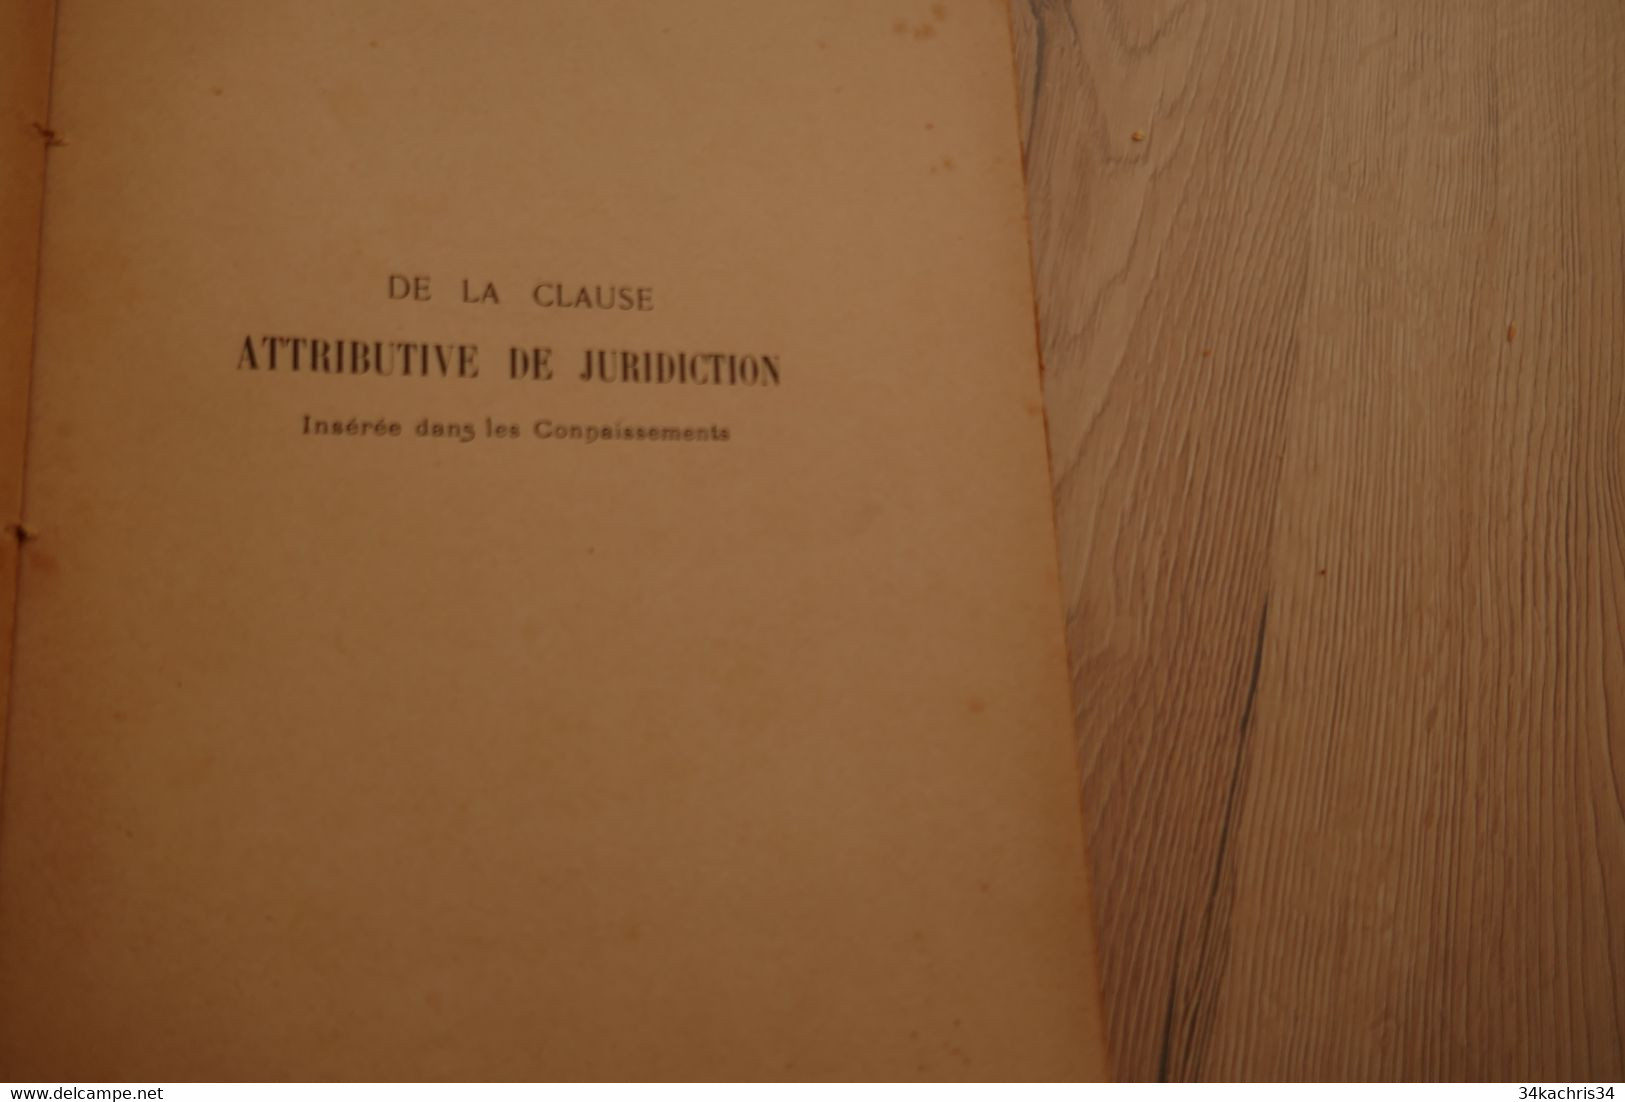 Thèse Pour Le Doctorat De La Clause Attributive De Juridiction Insérée Dans Les Connaissements 1905 P.Gautier Marine Com - Bateau